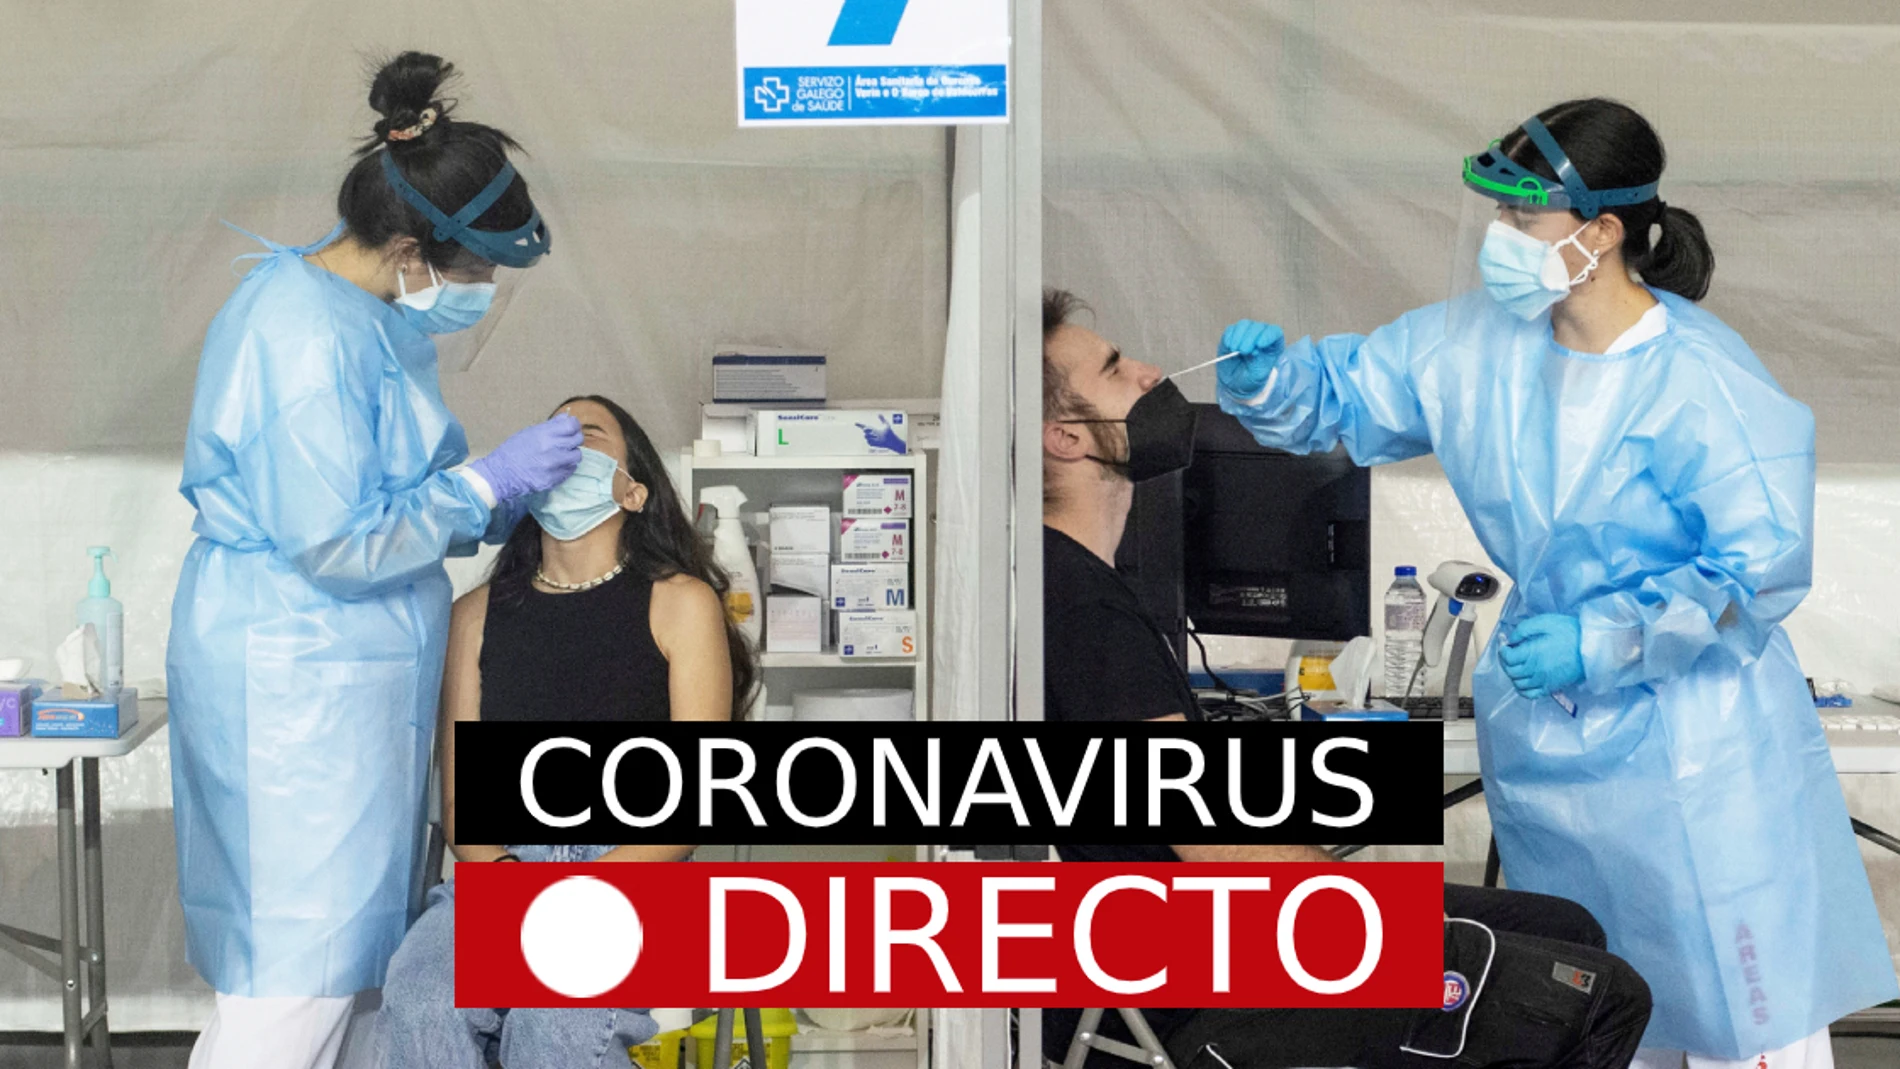 Última hora coronavirus: Noticias de vacuna, certificado COVID y medidas en España, hoy